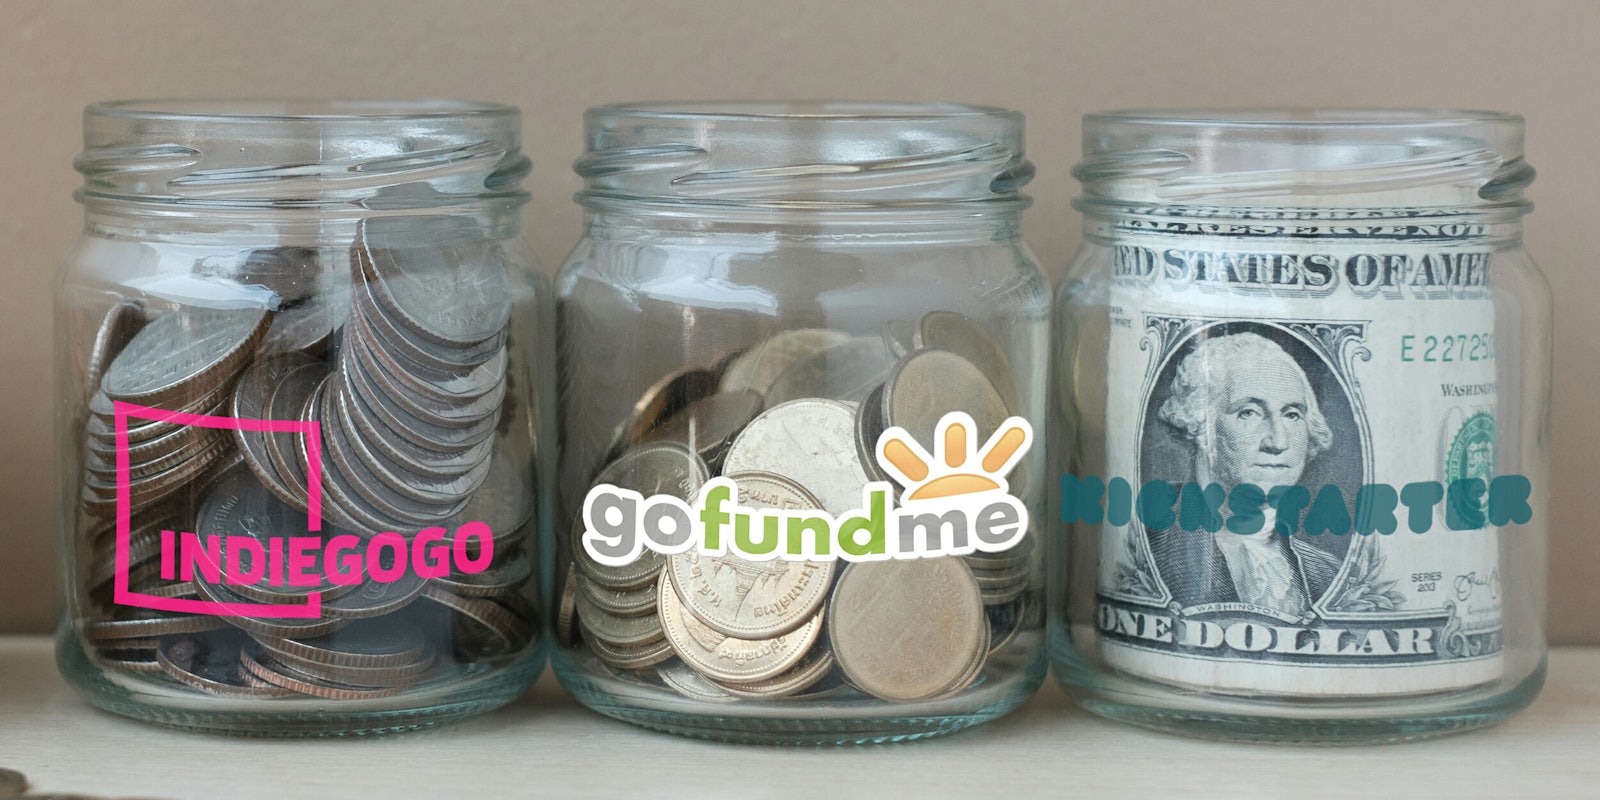 gofundme alternatives : Change jars labeled with Indiegogo, gofundme, and Kickstarter logos